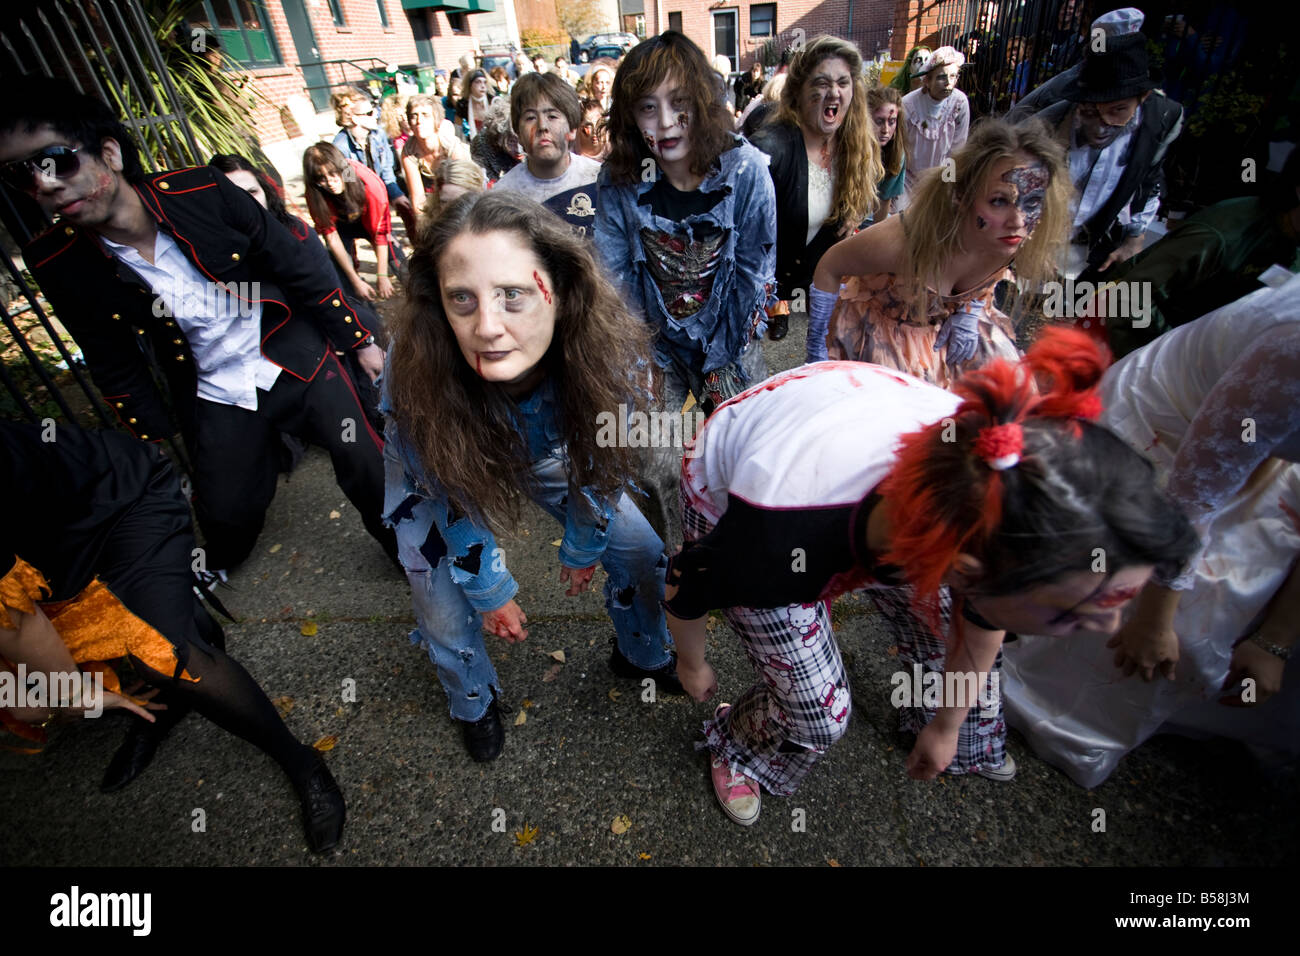 Le 25e anniversaire de Thriller de Jackson, Seattle vidéo Zombies se rassemblent dans le parc occidental d'accueillir un événement de danse Thriller. Banque D'Images